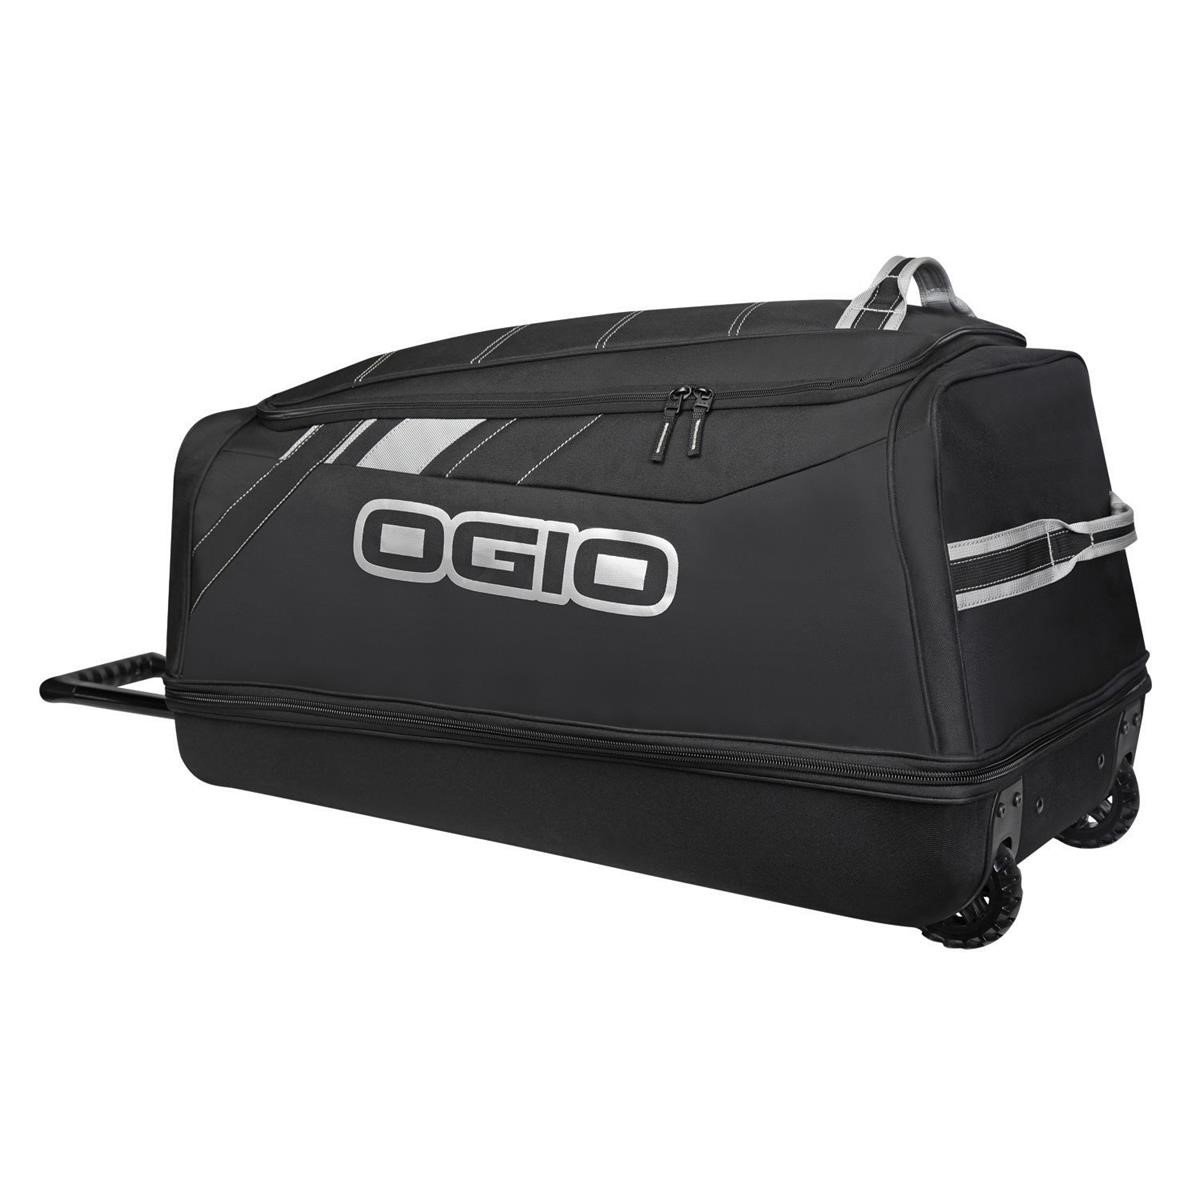 Ogio Borsa da Viaggio Shock Wheel Bag Stealth/Nero, 114 Litri